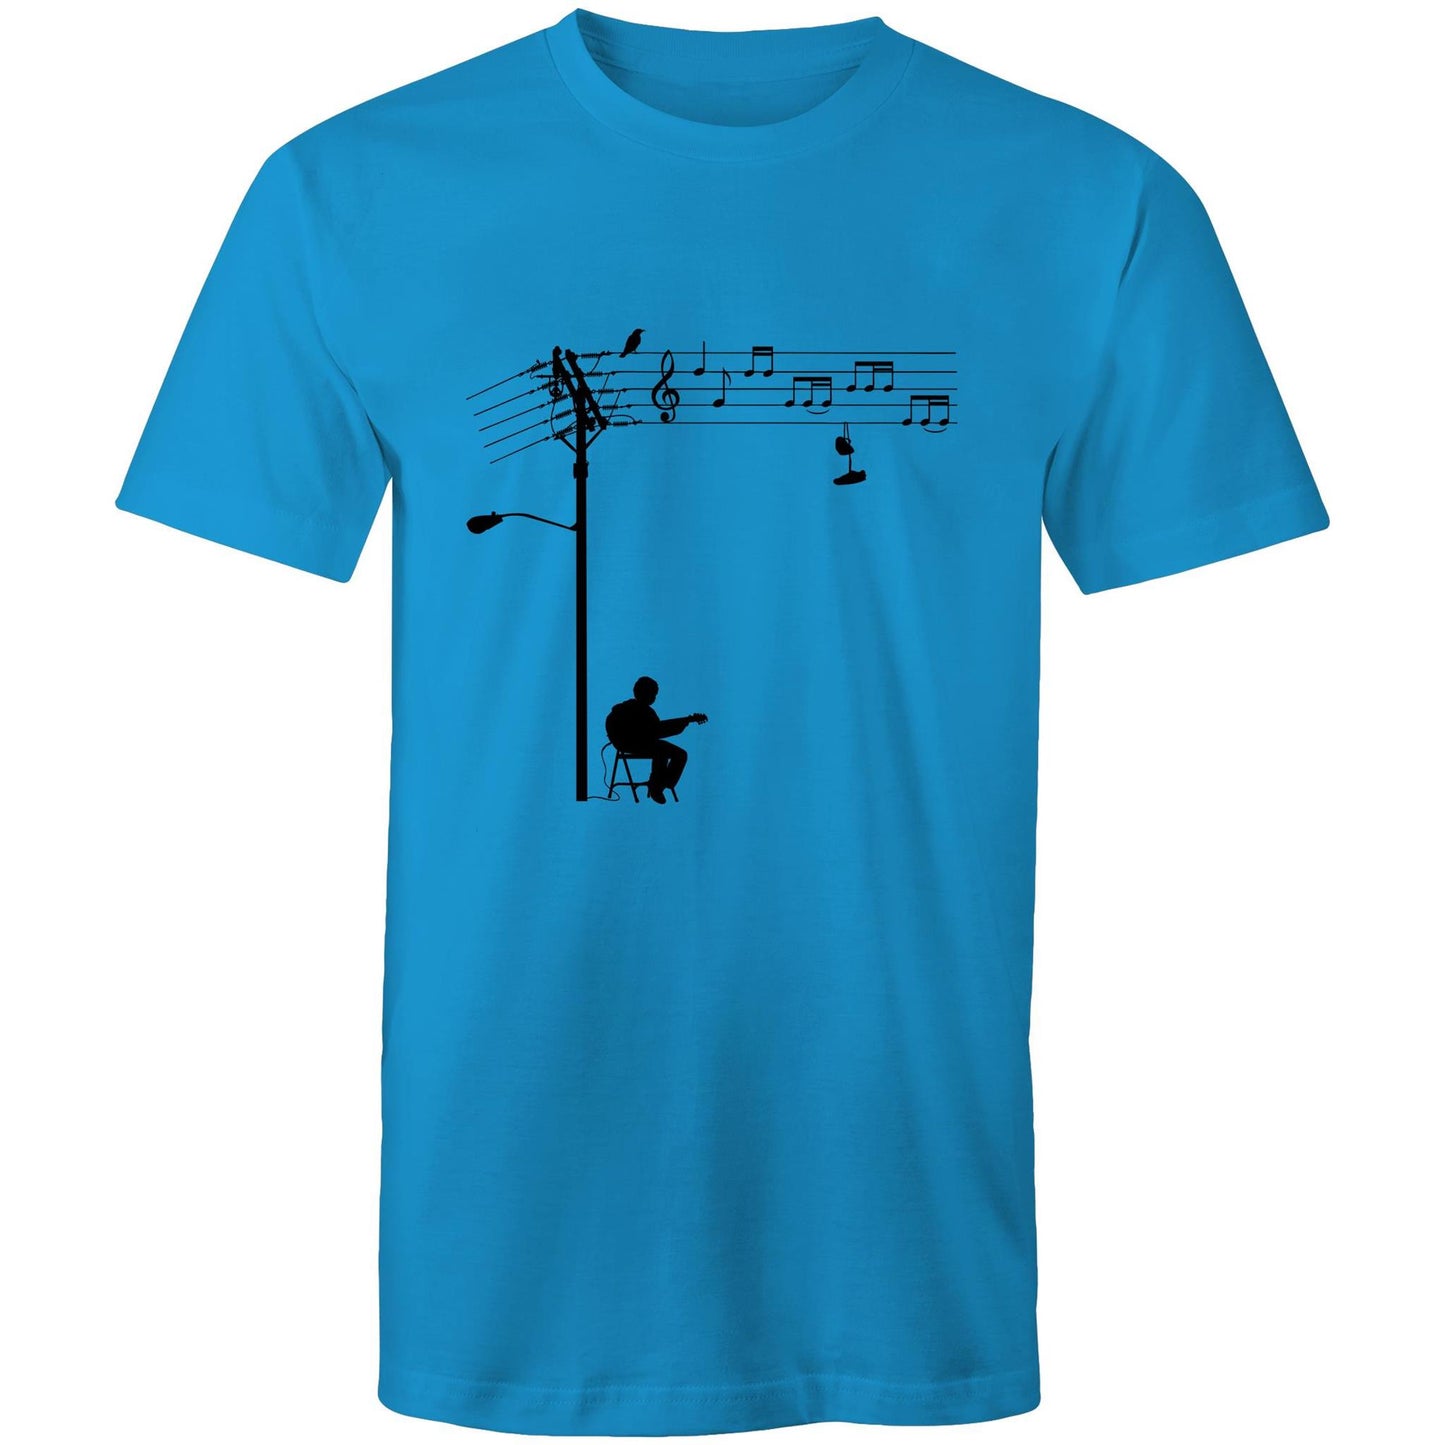 Wired Sound - Men's T-Shirt